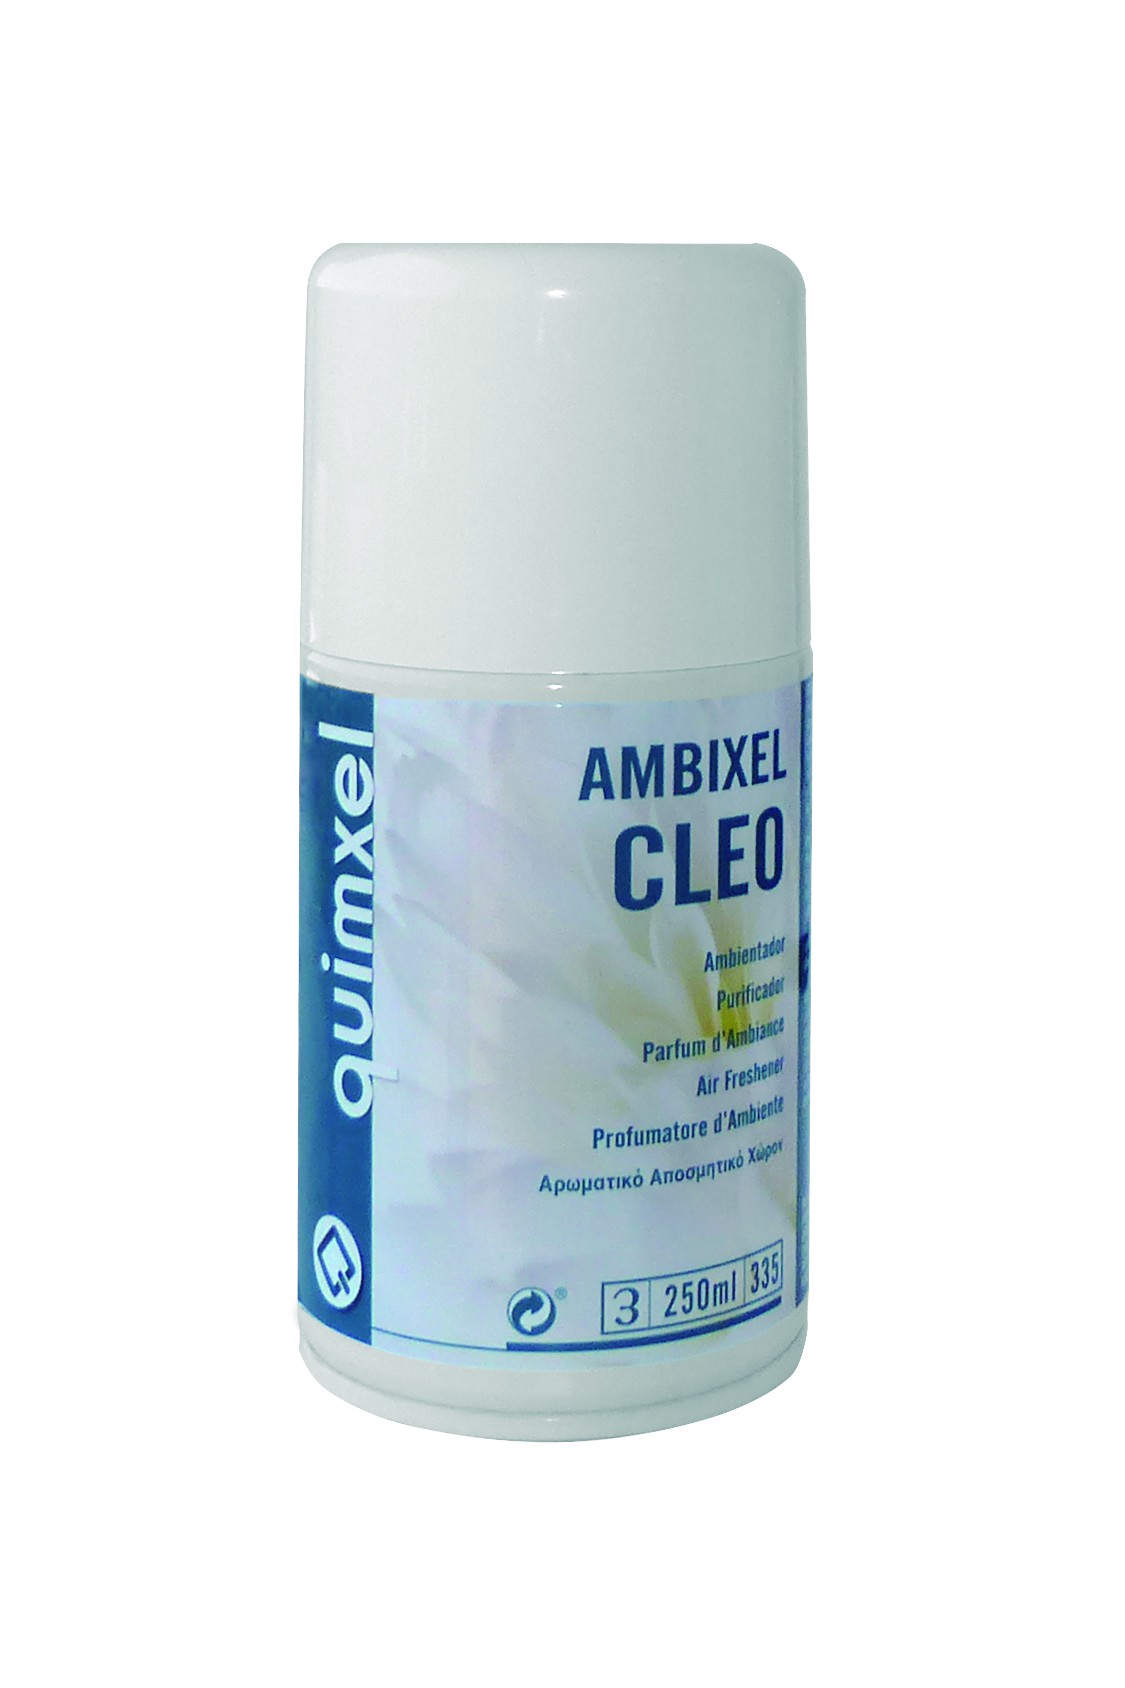 Ambientador Spray, Ambixel Cleo 250ml.